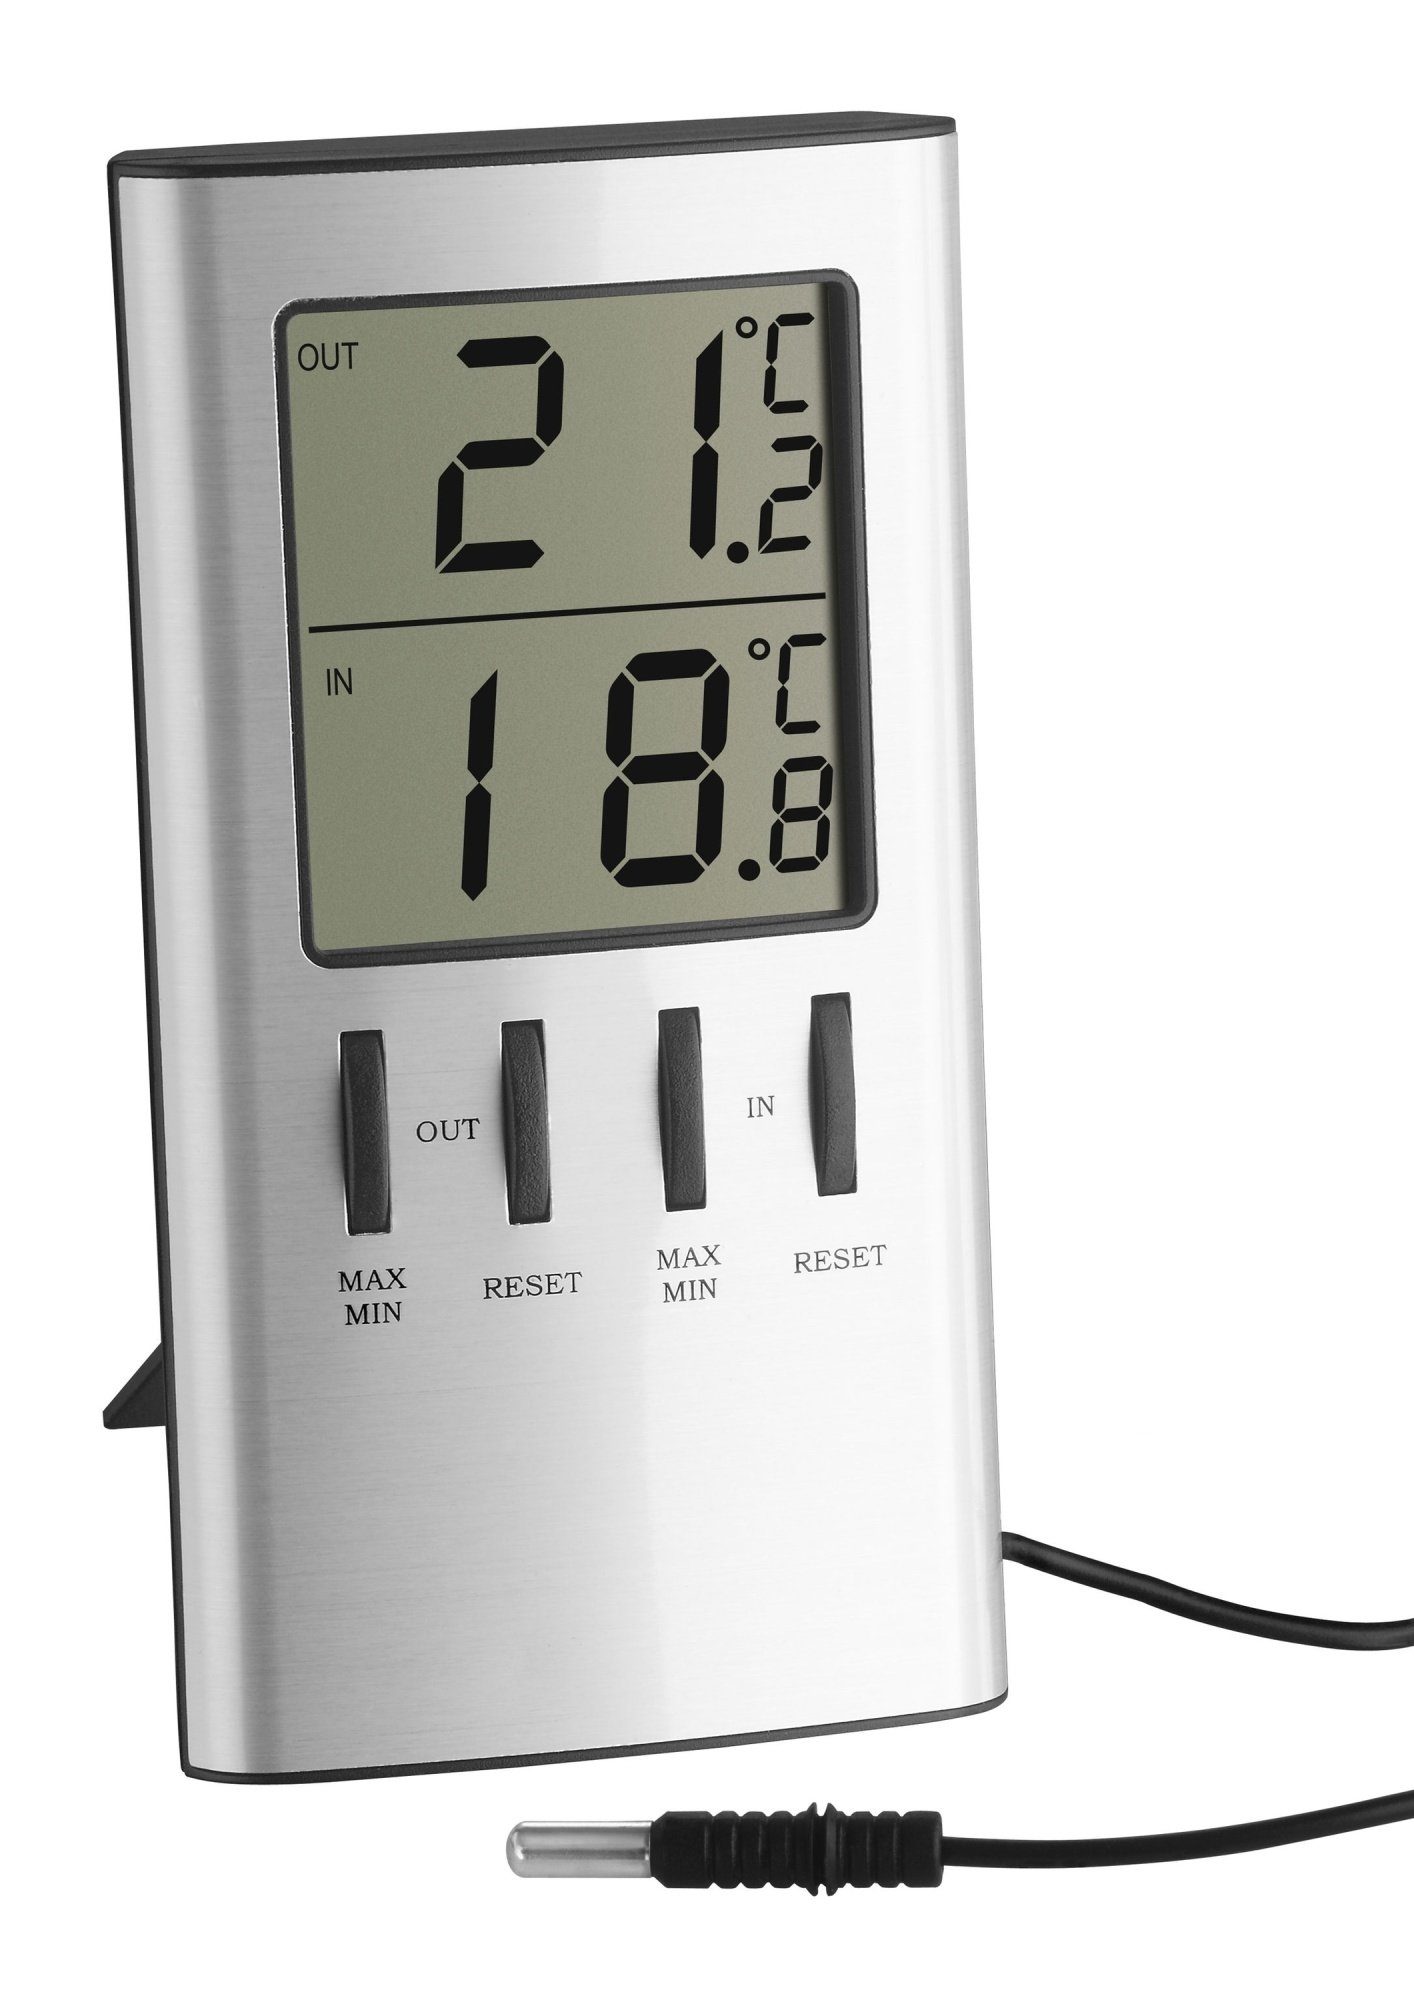 TFA Dostmann Außenthermometer (Anzeige: Analog, Höhe: 27,5 cm